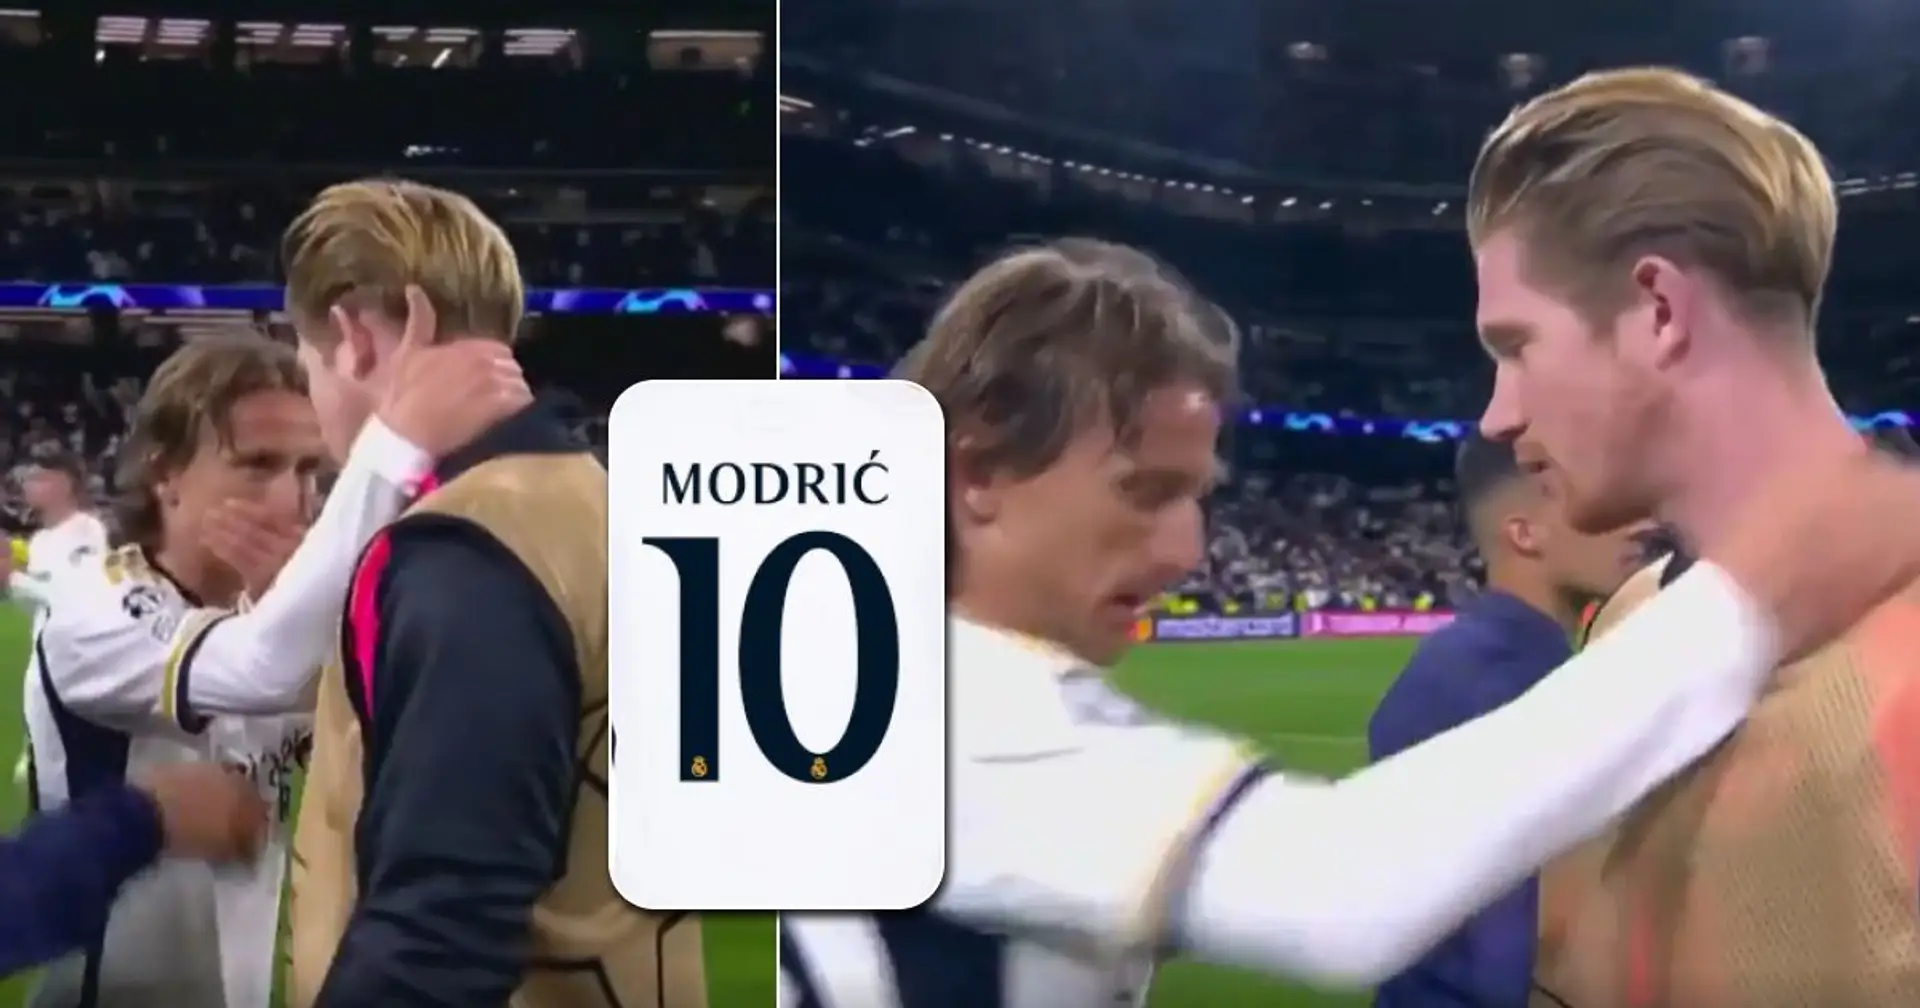 De Bruyne pide la camiseta de Modric al final del partido, vista la reacción de Luka